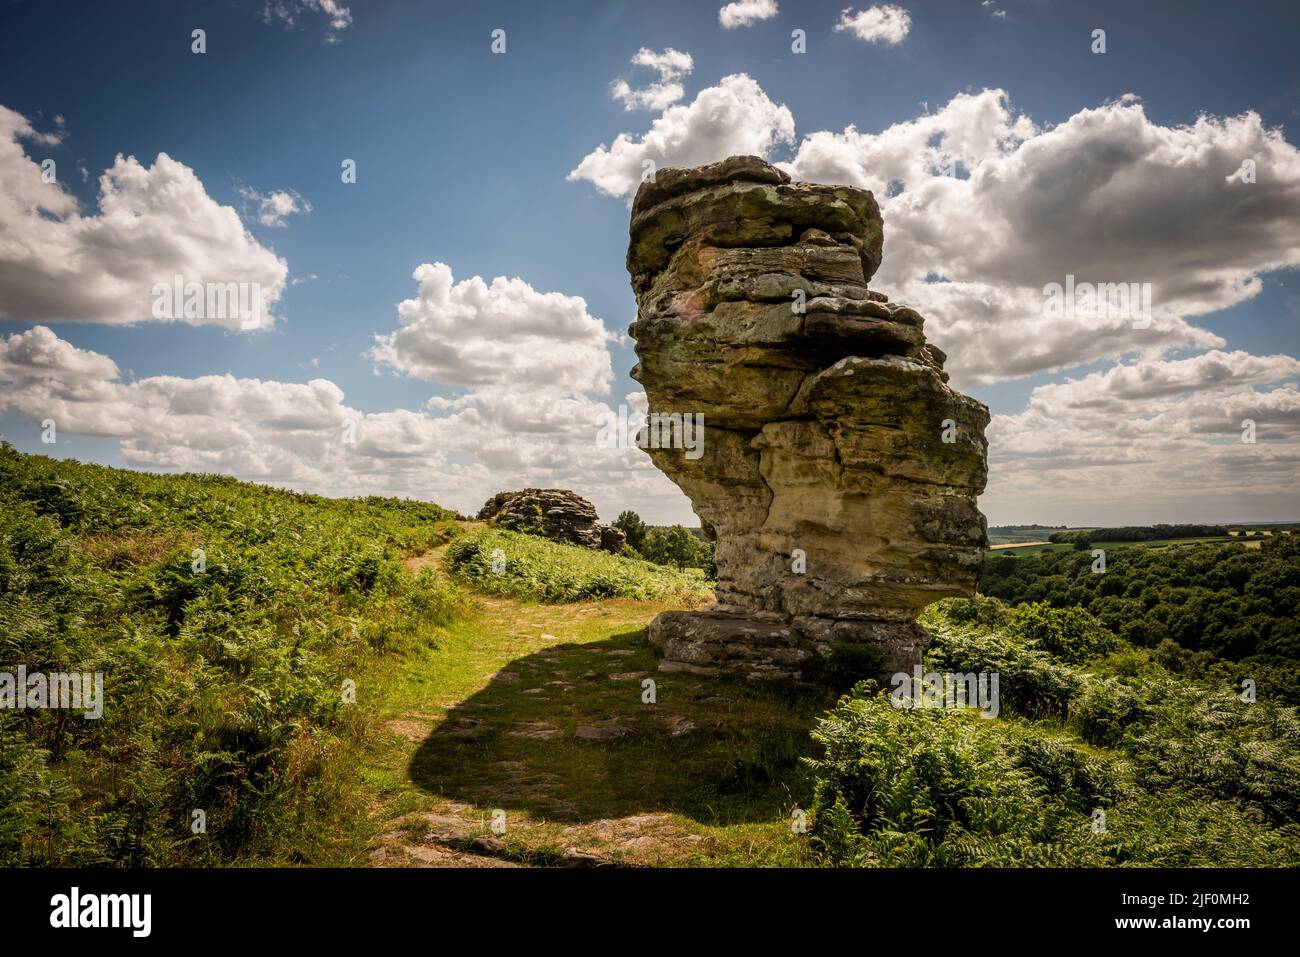 Las formaciones rocosas naturales de Bridestos creadas por la erosión en el bosque de Dalby, North Yorkshire, Reino Unido Foto de stock